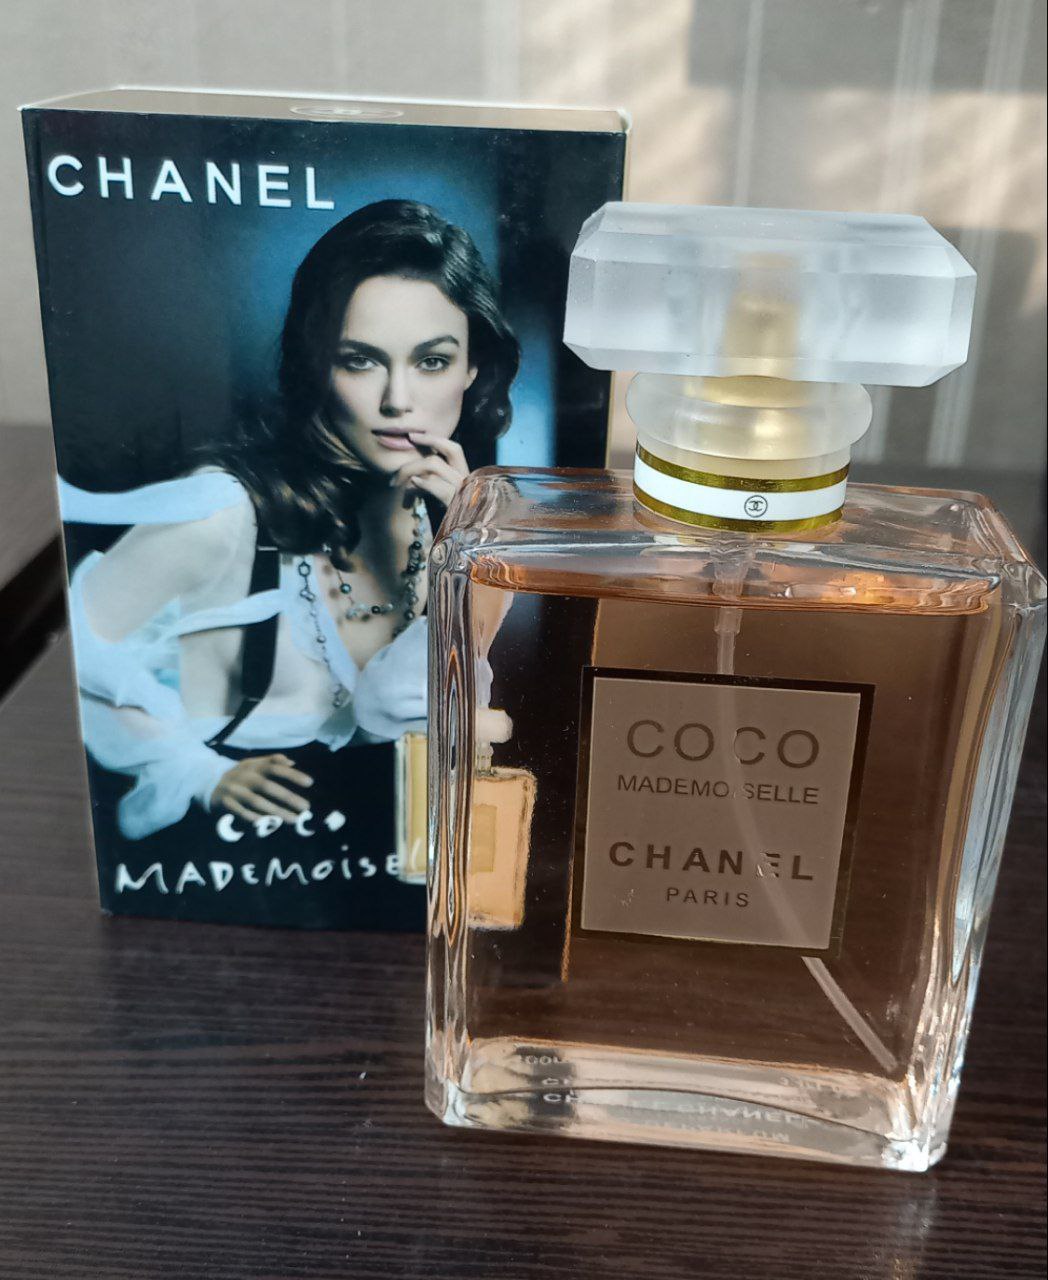 عطر زنانه مدل Coco Chanel کوکو شنل